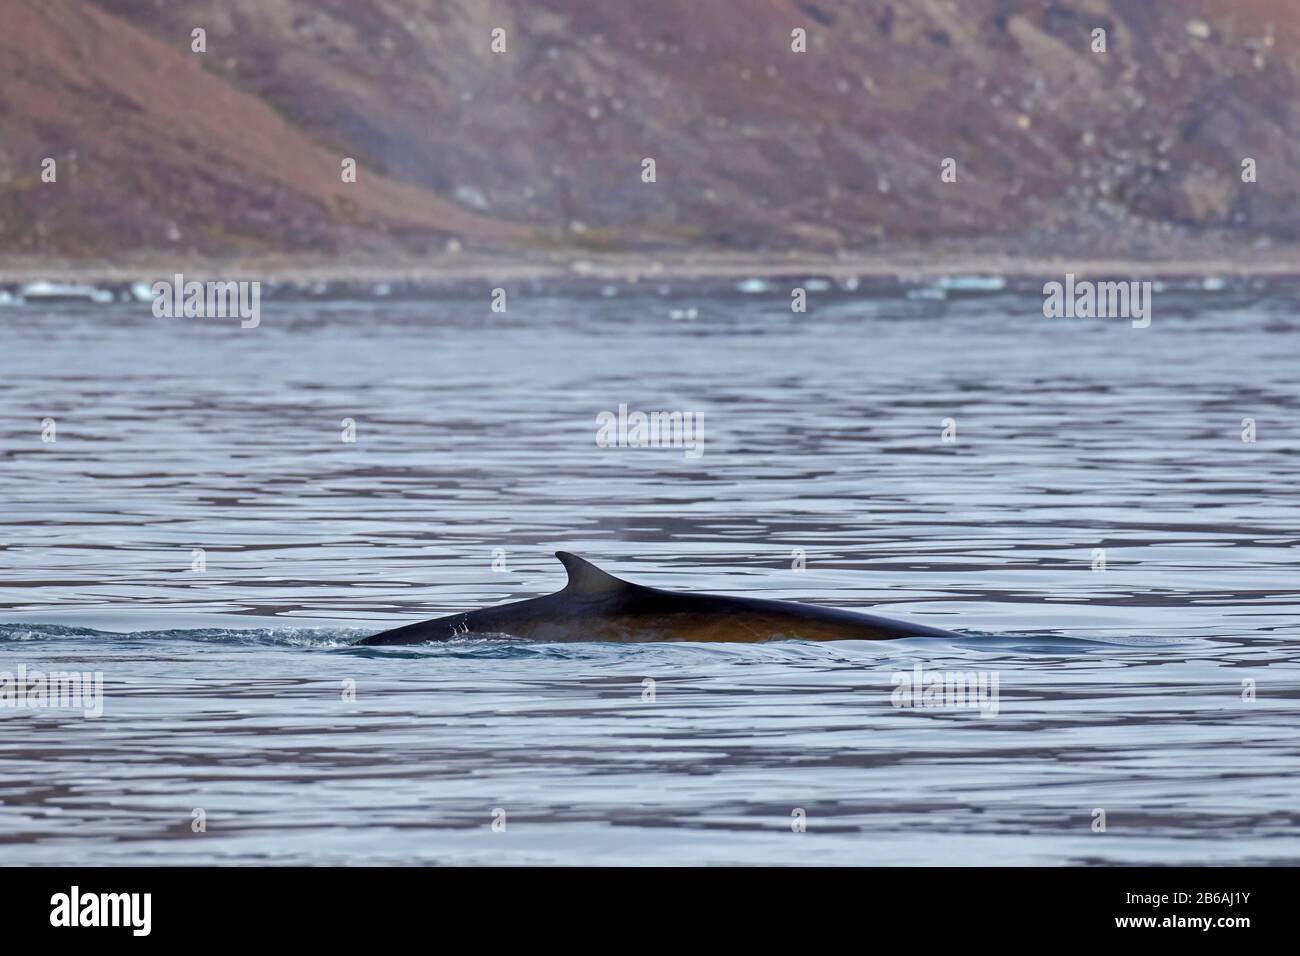 Ballena de aleta / ballena jorobada / rorcual común / ballena arenosa / ballena jorobada (Balaenoptera physalus) mostrando la aleta dorsal mientras se está surfeando Foto de stock